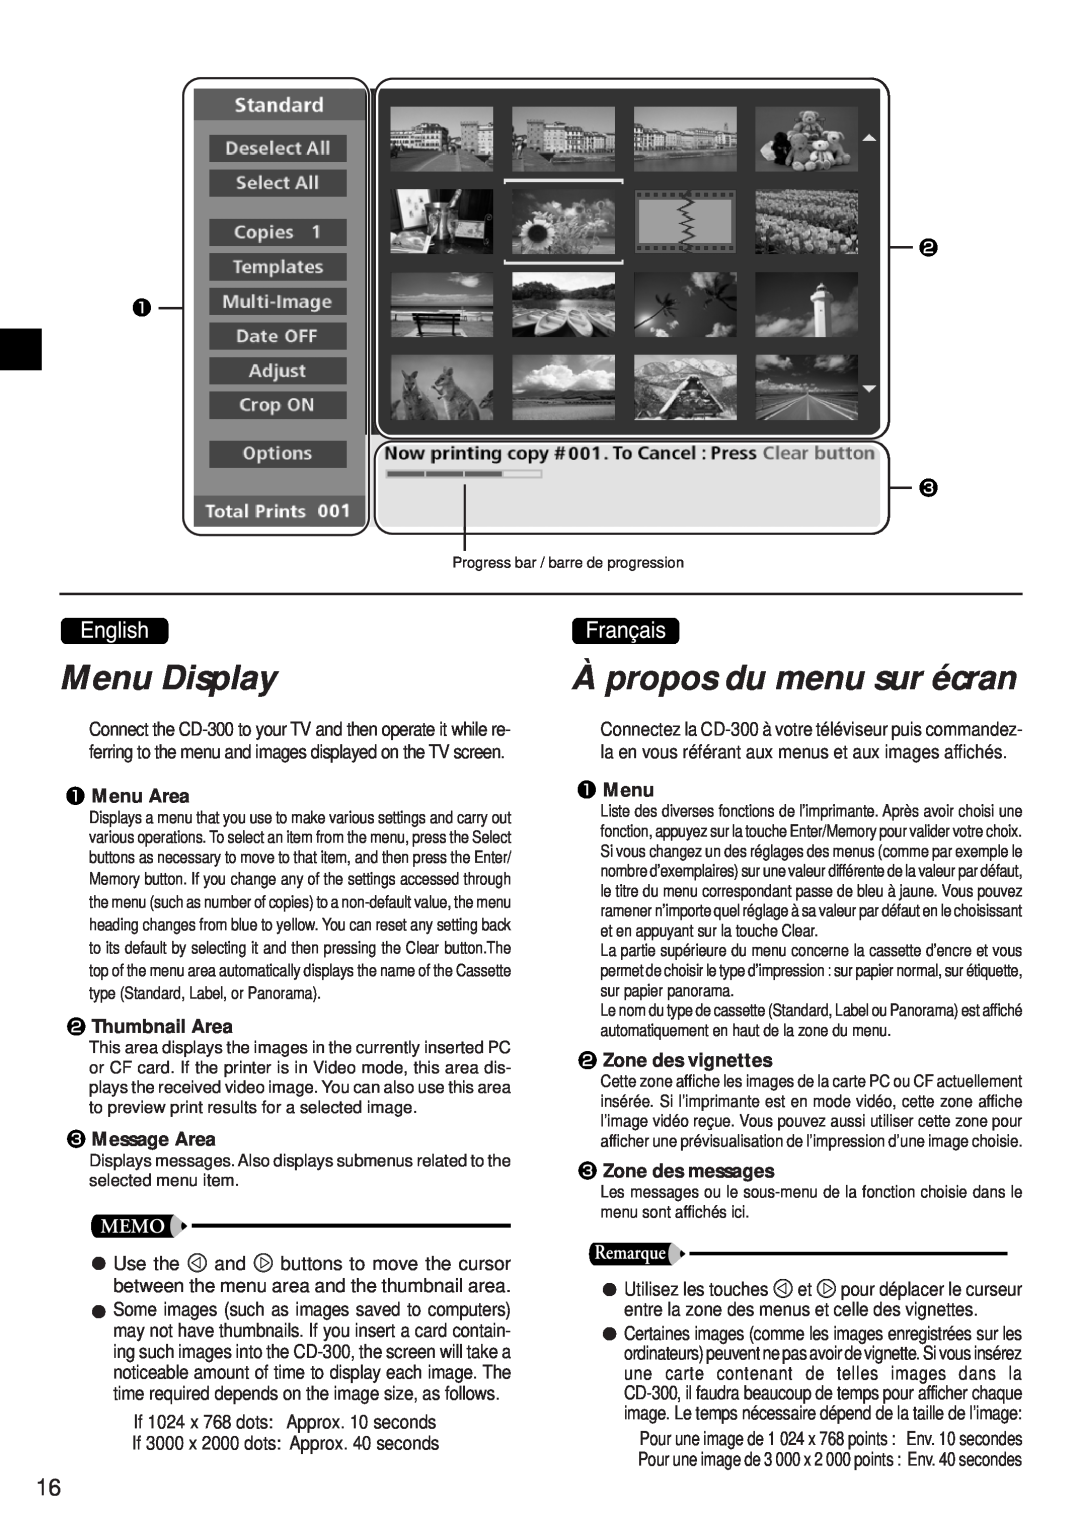 Canon CD-300 manual Menu Display, À propos du menu sur écran, Menu Area, Thumbnail Area, Message Area, Zone des vignettes 